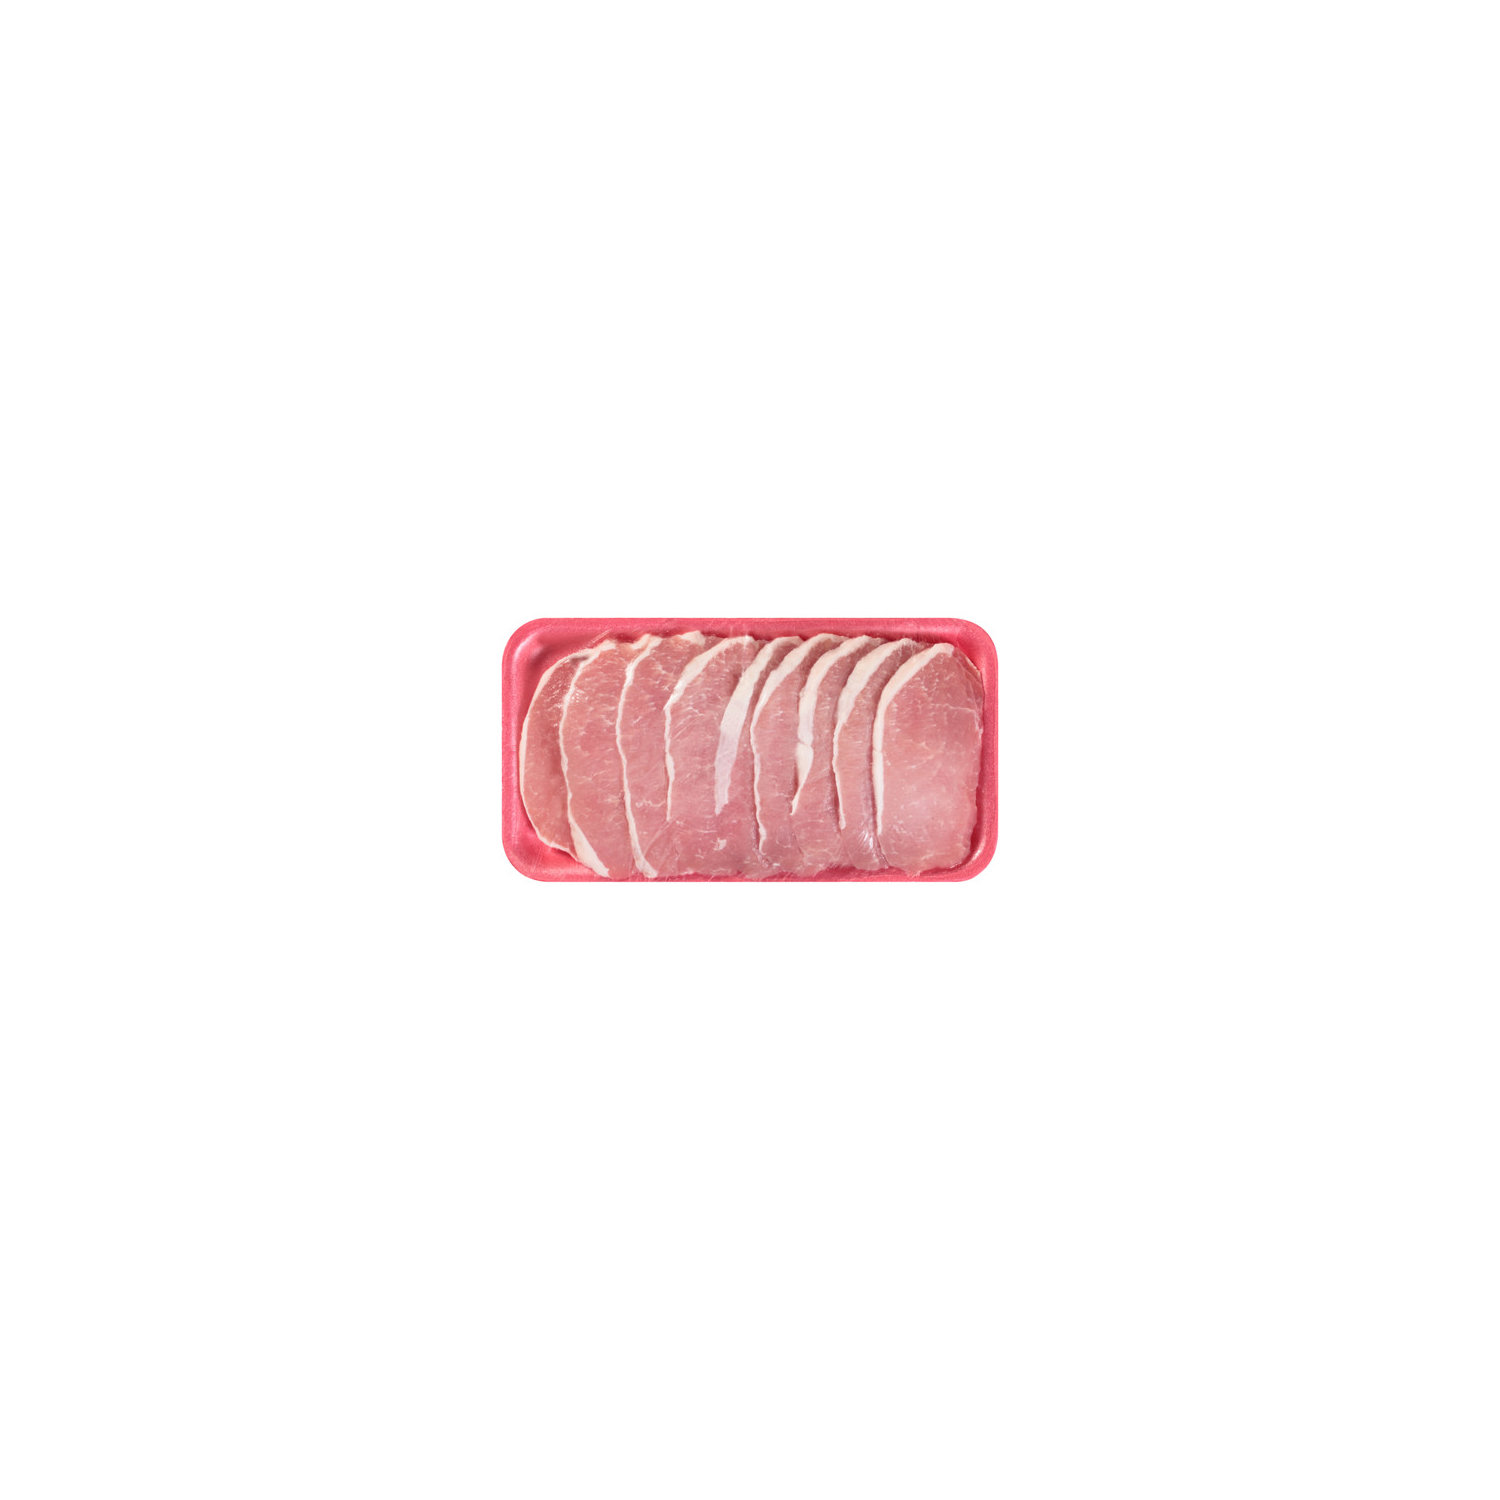 CR Thin Cut Boneless Pork Chop - Smart & Final